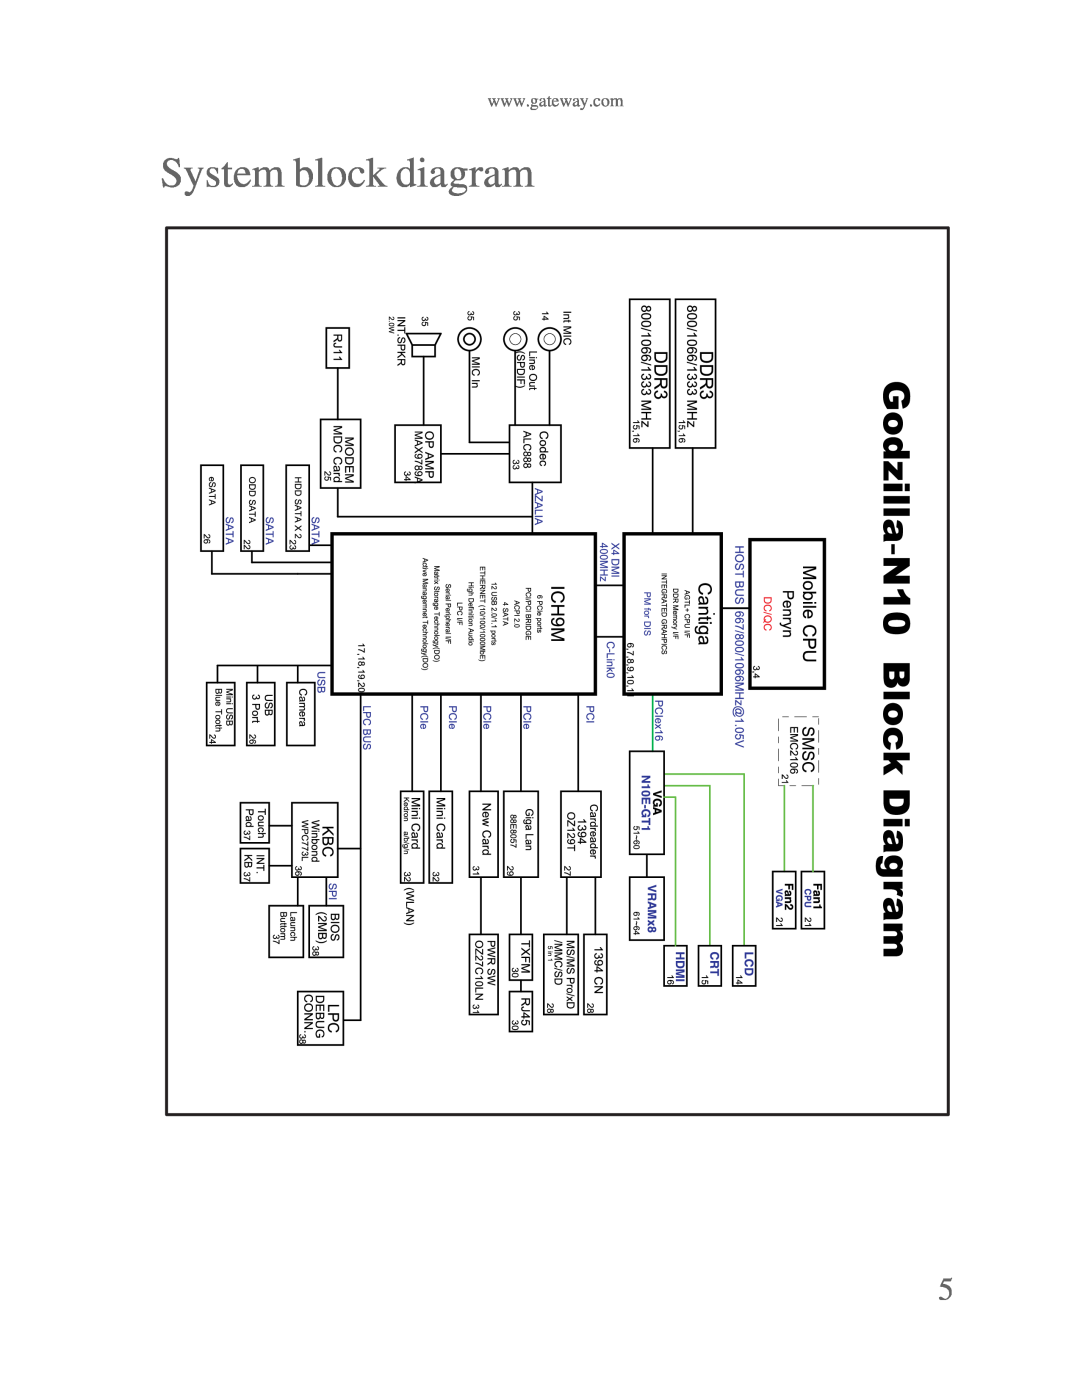 Gateway p-79 manual System block diagram 